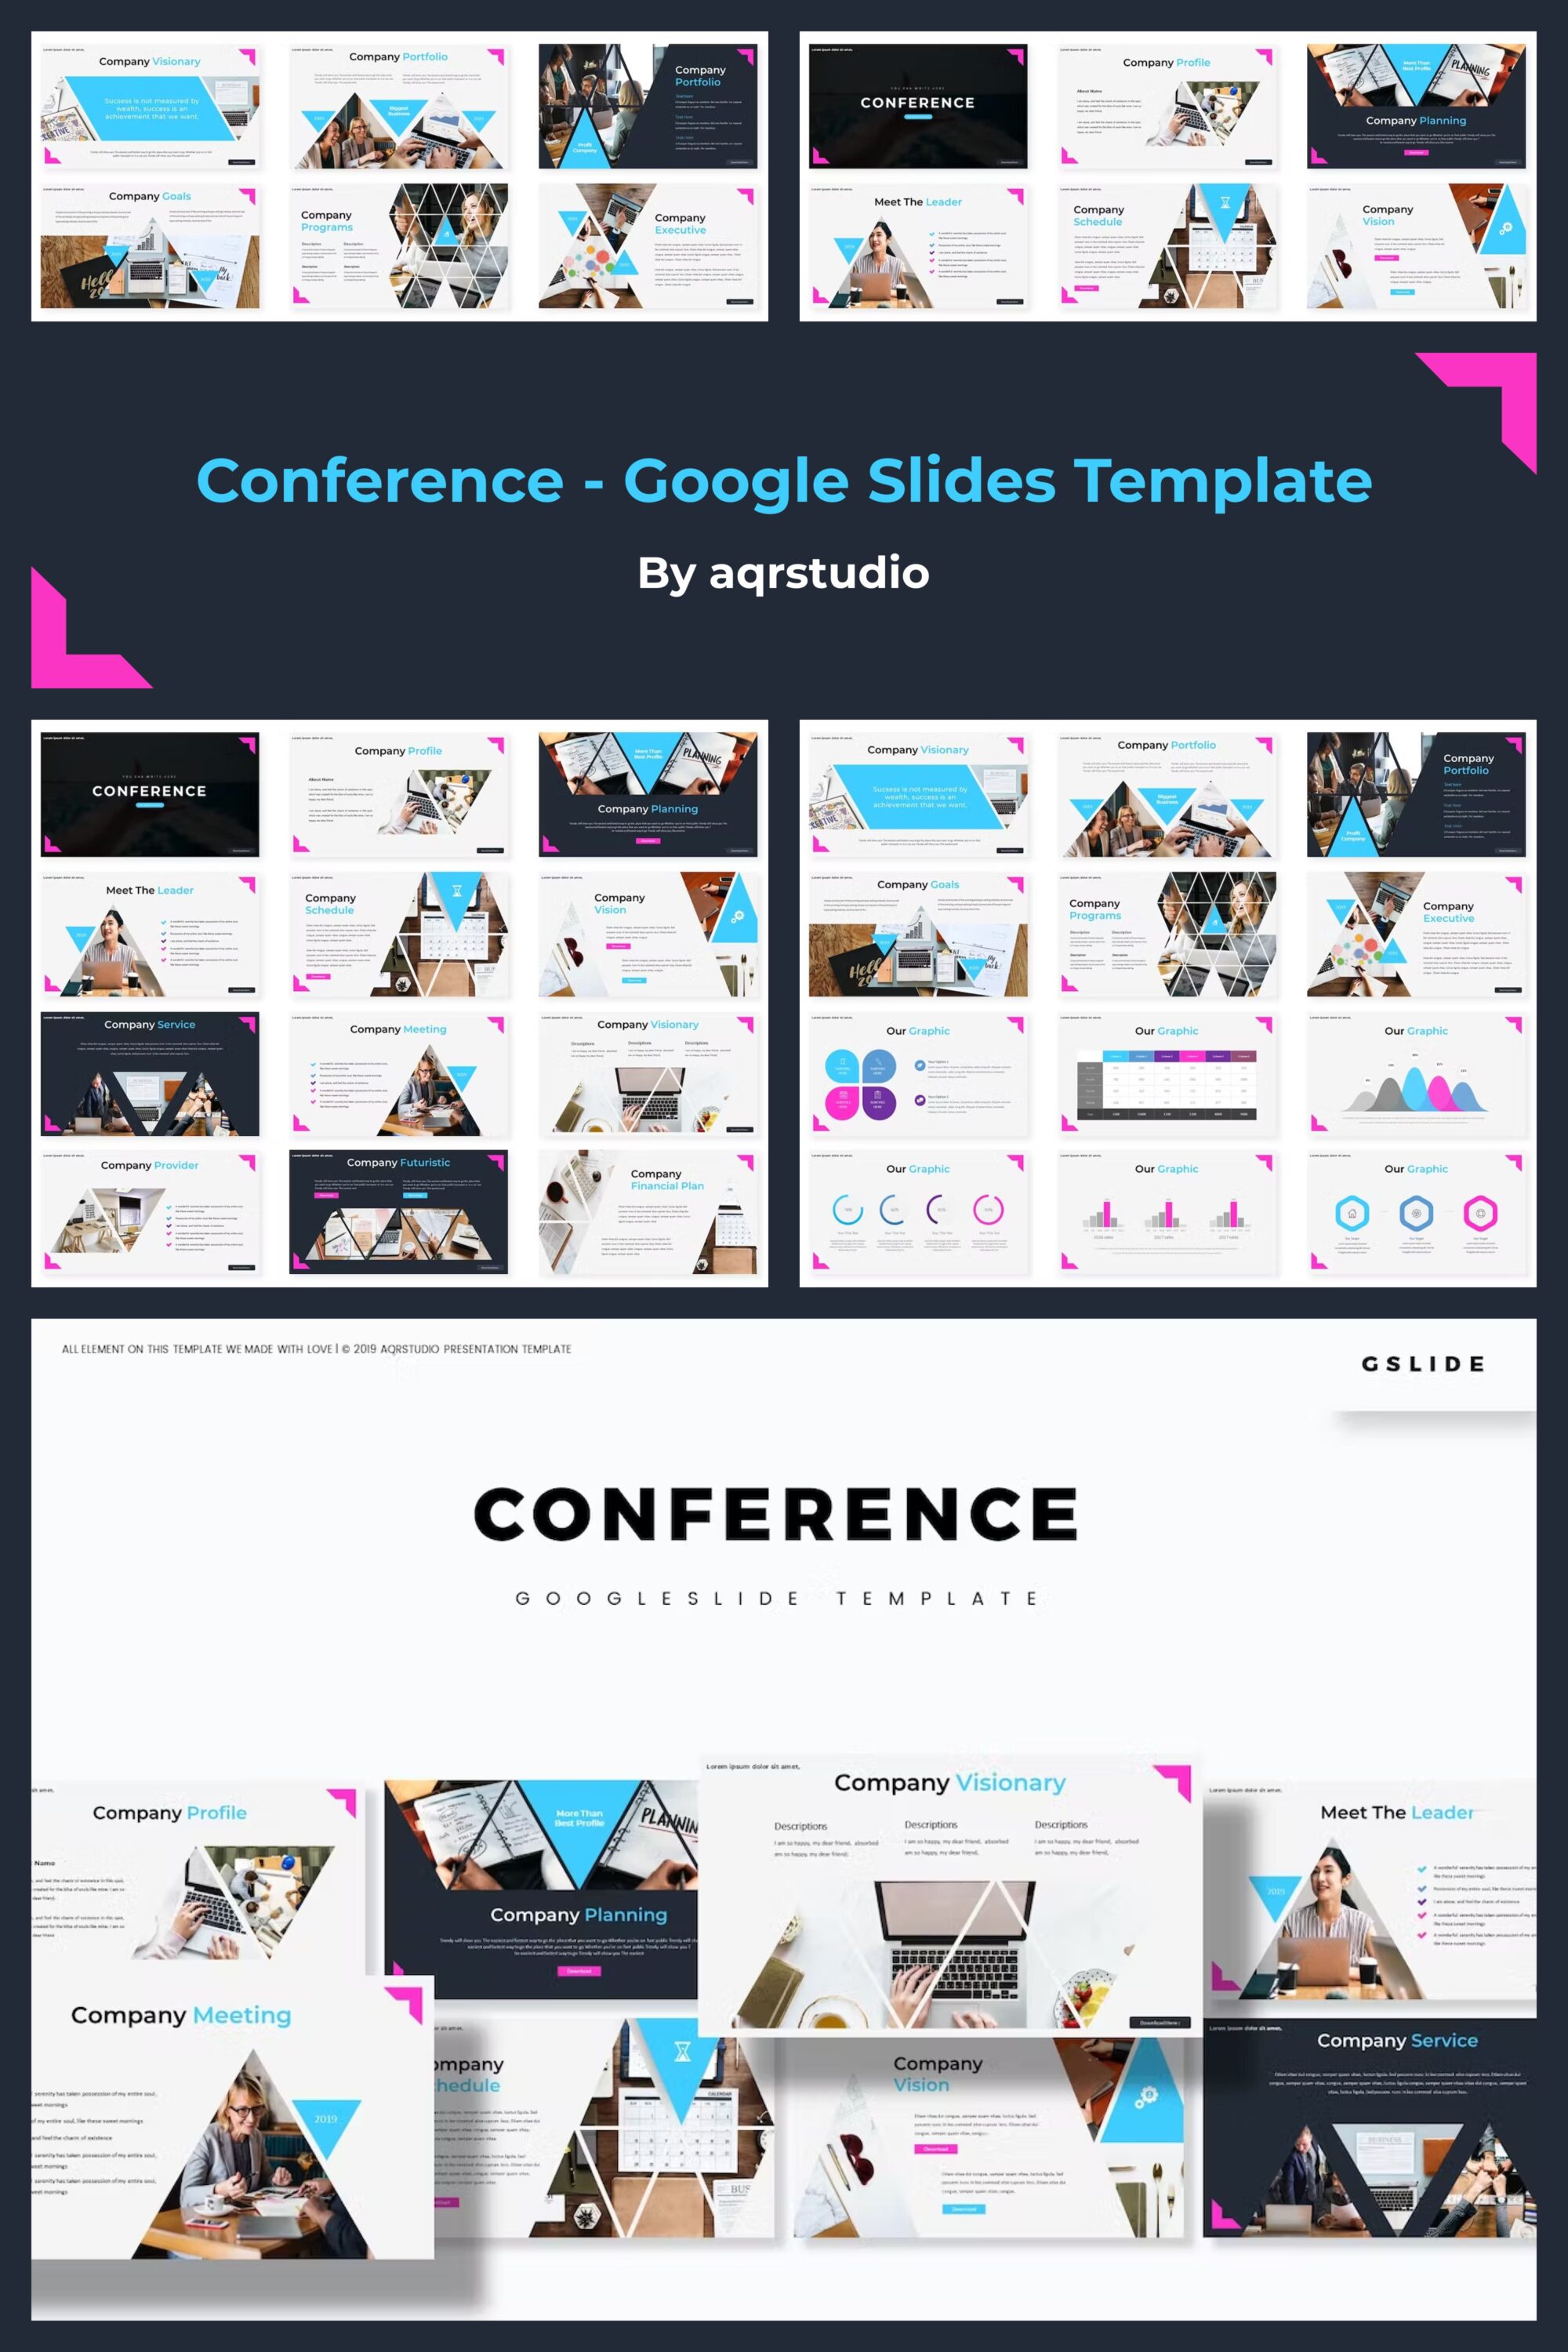 Conference google slides template images of pinterest.